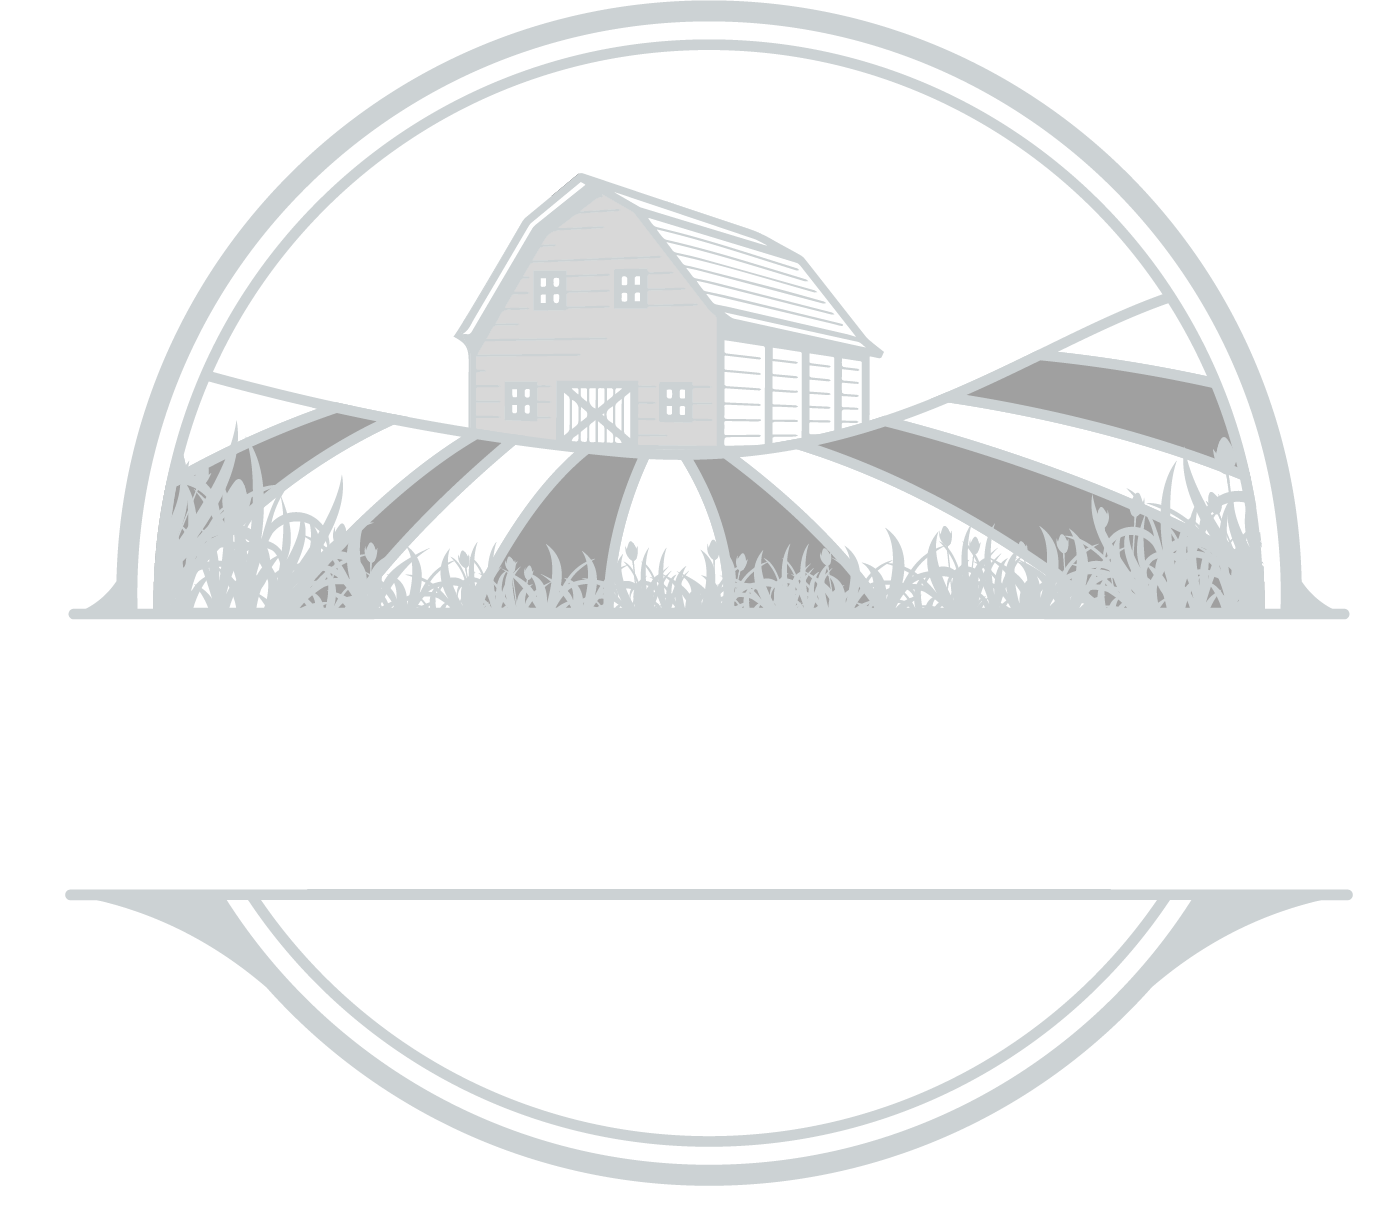 The Hilltop Farm